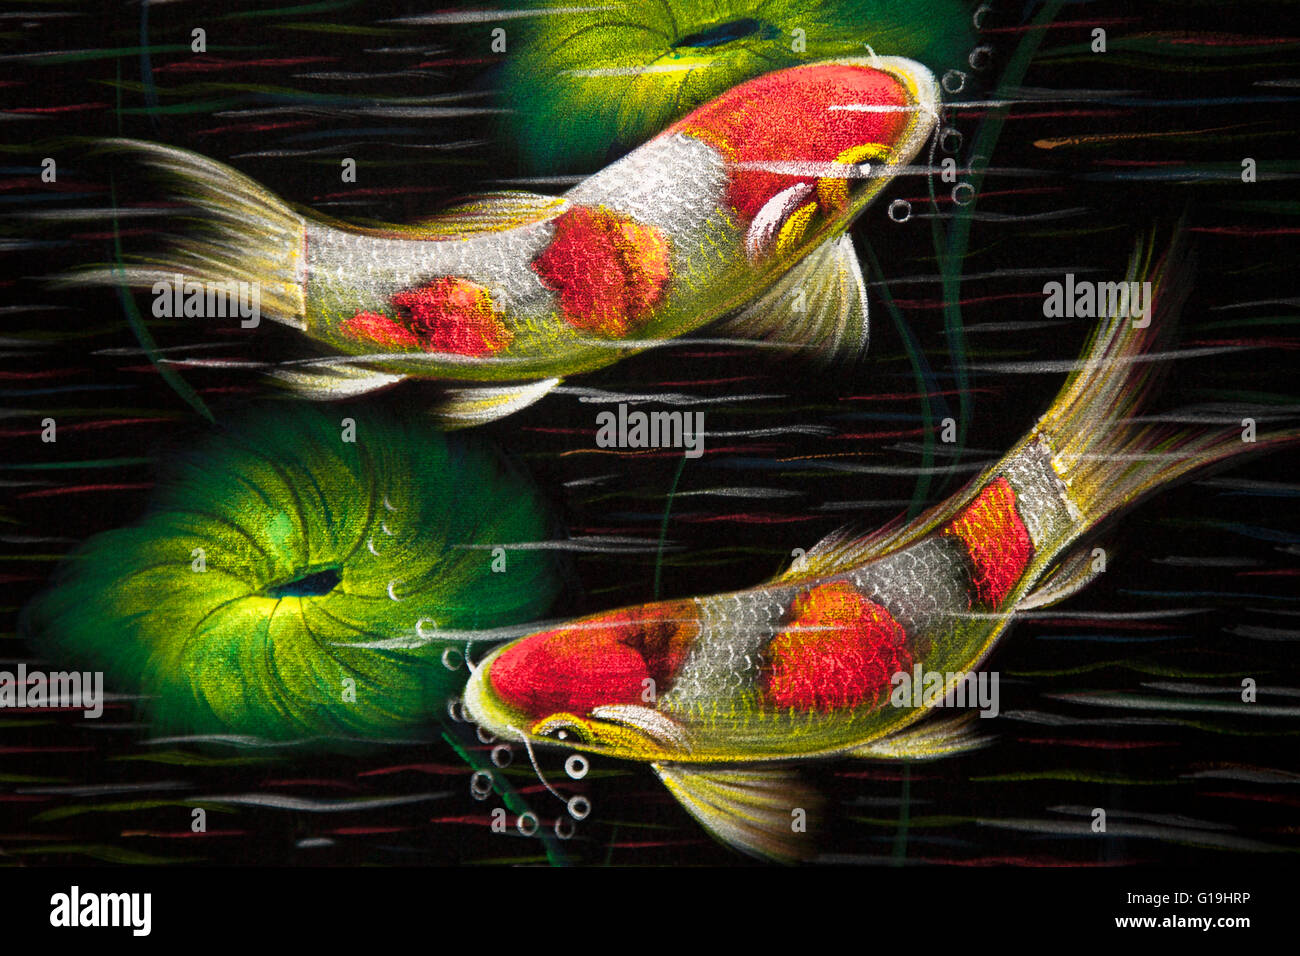 Pom Goldfisch Street Art Fisch malen. Karpfen fische Abbildung, mit der geschwungenen Kurven der fish Blowing Bubbles. Thailand Artwork. Stockfoto